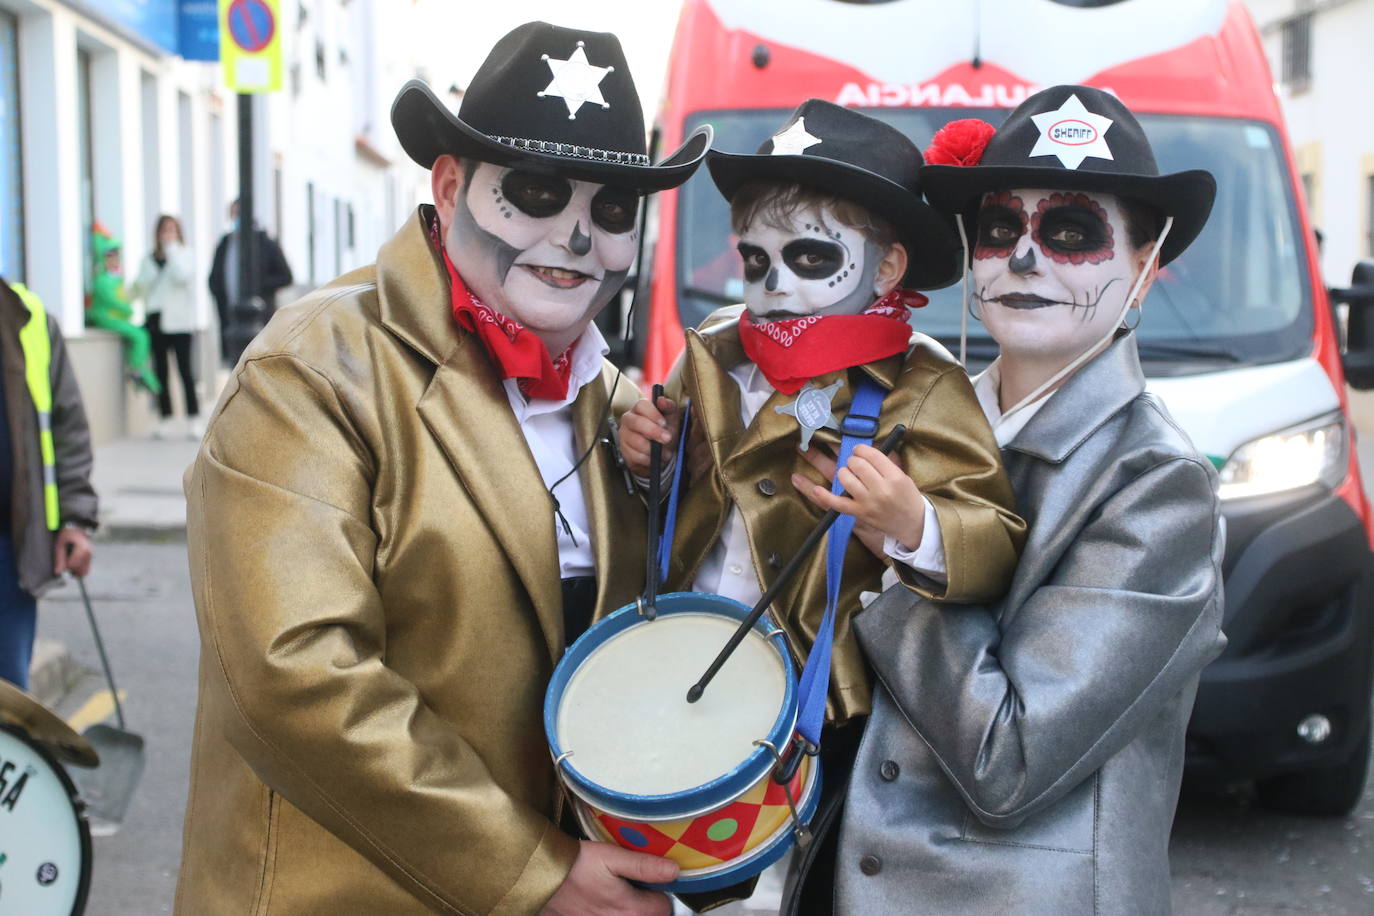 Fotos: El Carnaval vuelve a teñir de color y alegría las calles de Jerez